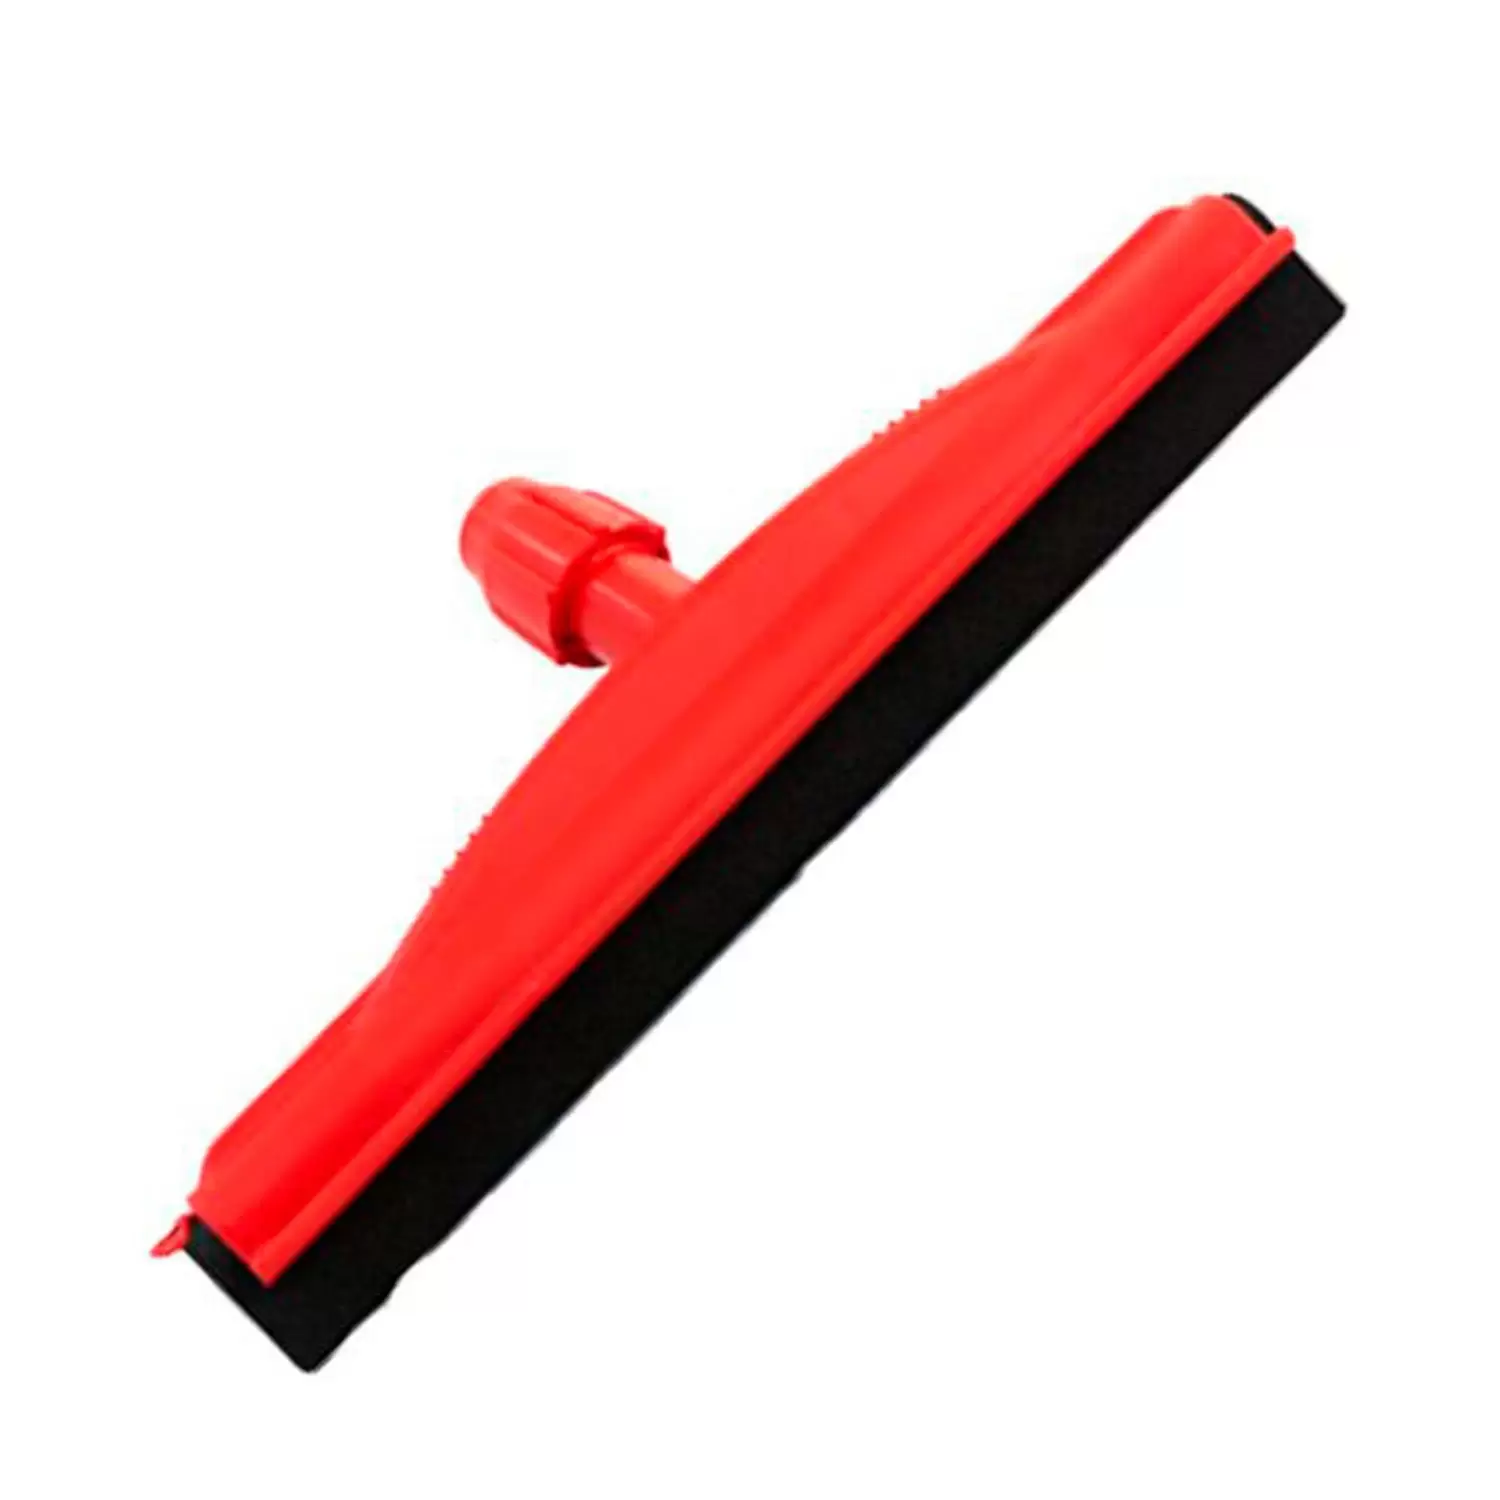 Rodo plastico duplo 45 centimetros vermelho sem cabo SP9056/9157VR superpro